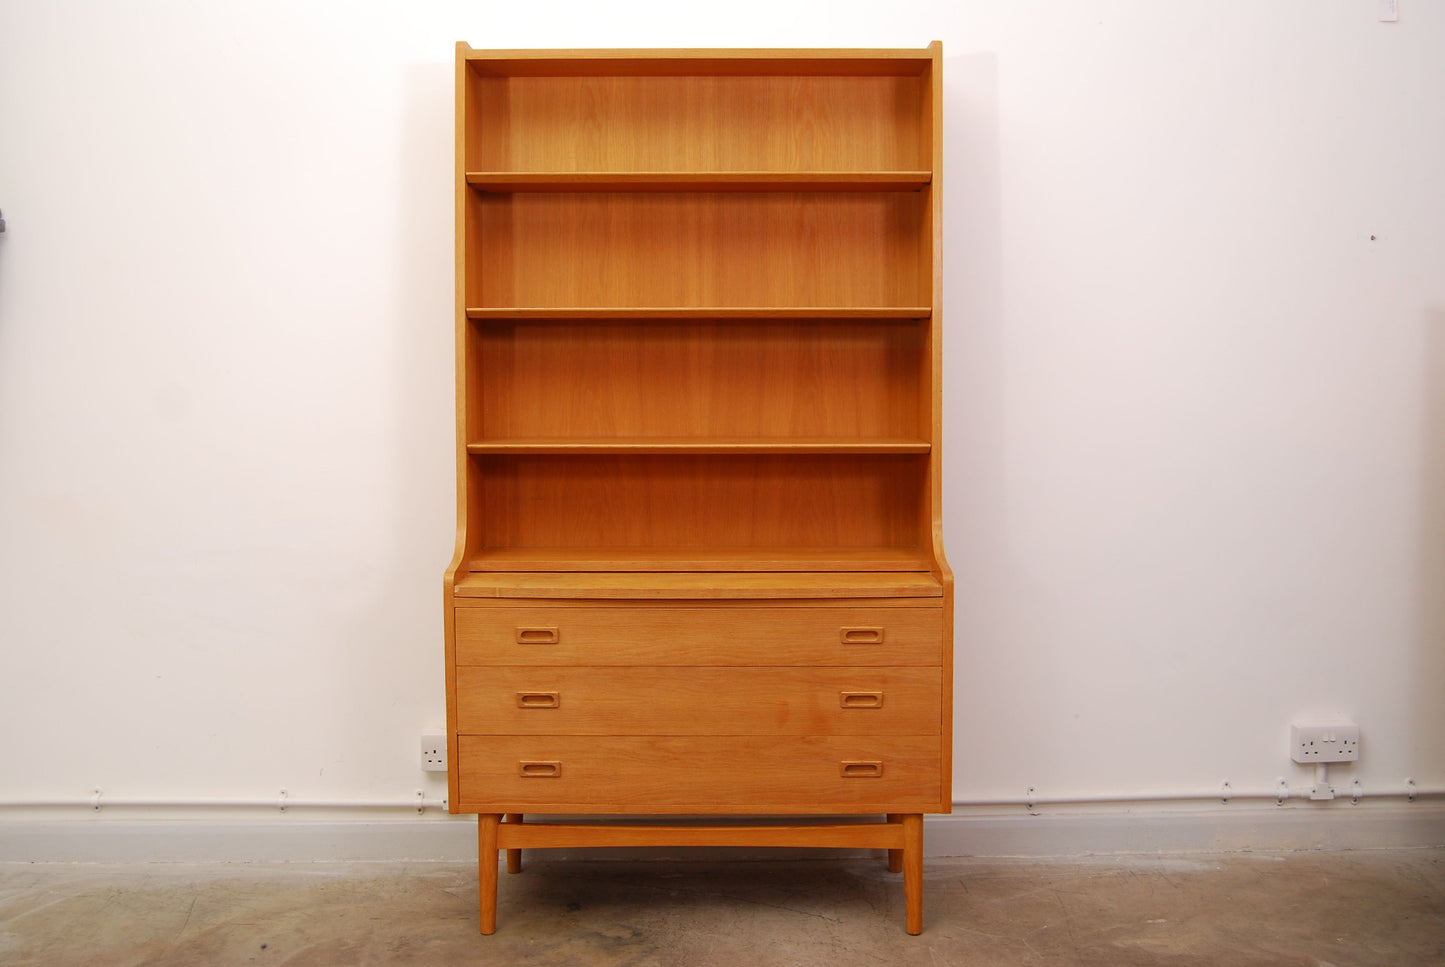 Oak bookshelf / bureau